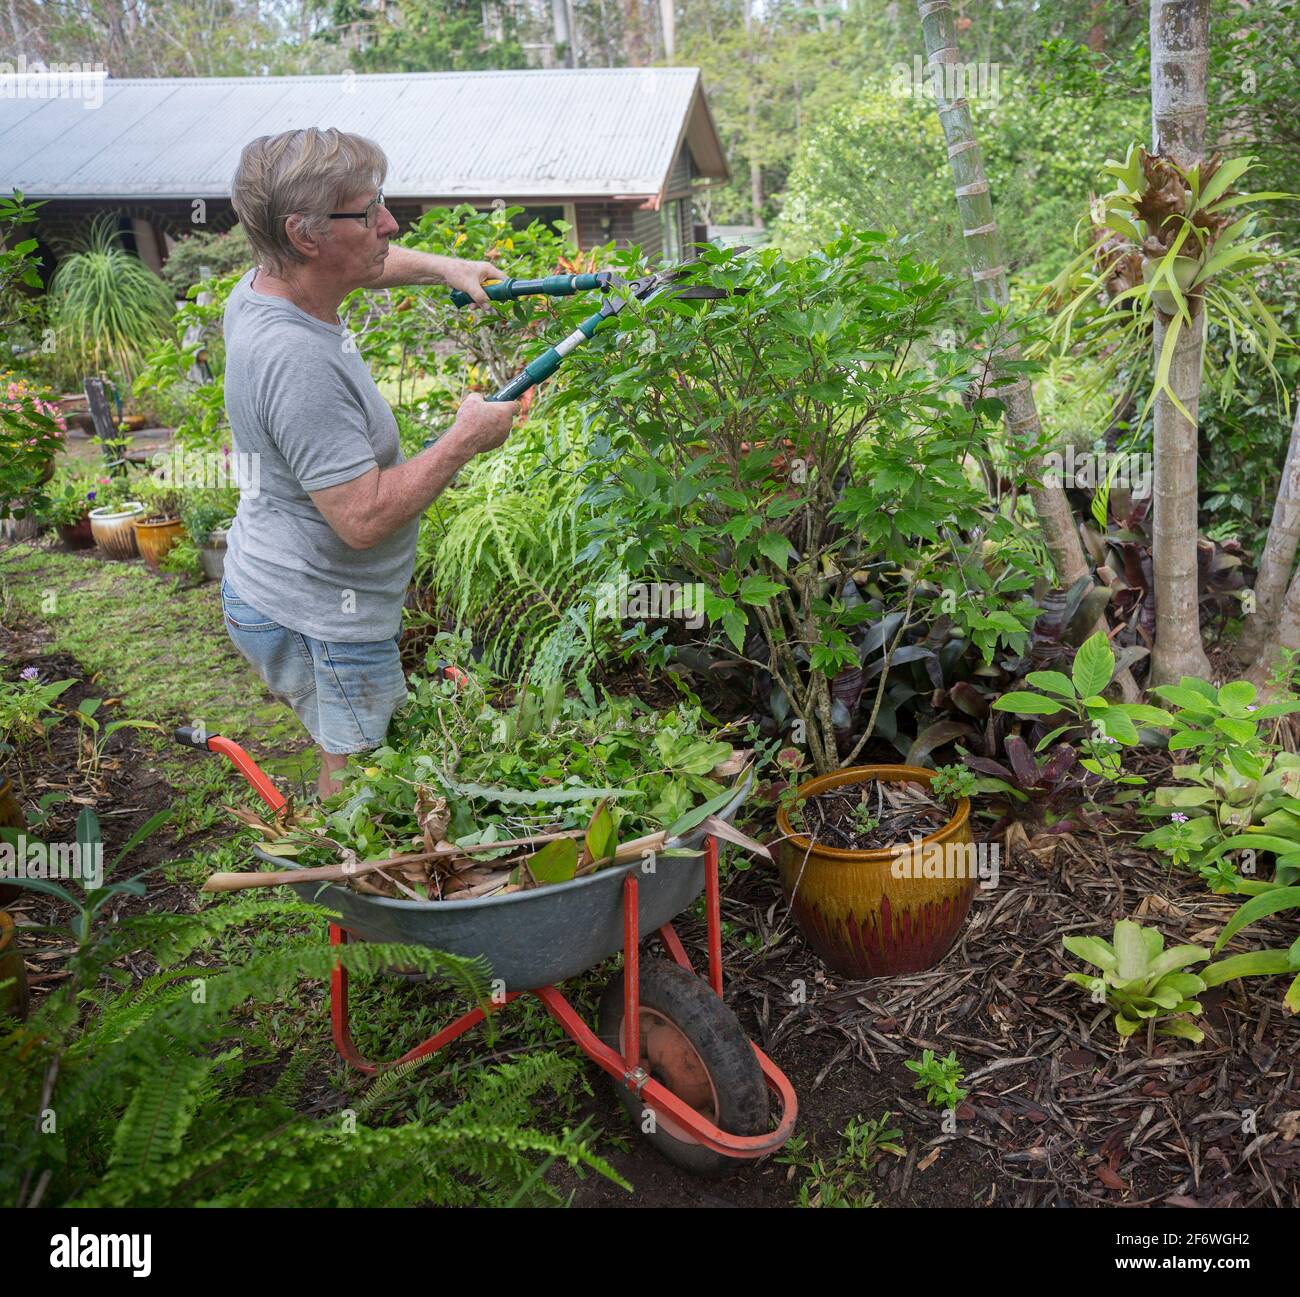 L'homme, jardinier, utilise des cisailles pour élaguer les arbustes avec des matériaux végétaux entaillés dans une brouette voisine dans un jardin australien Banque D'Images